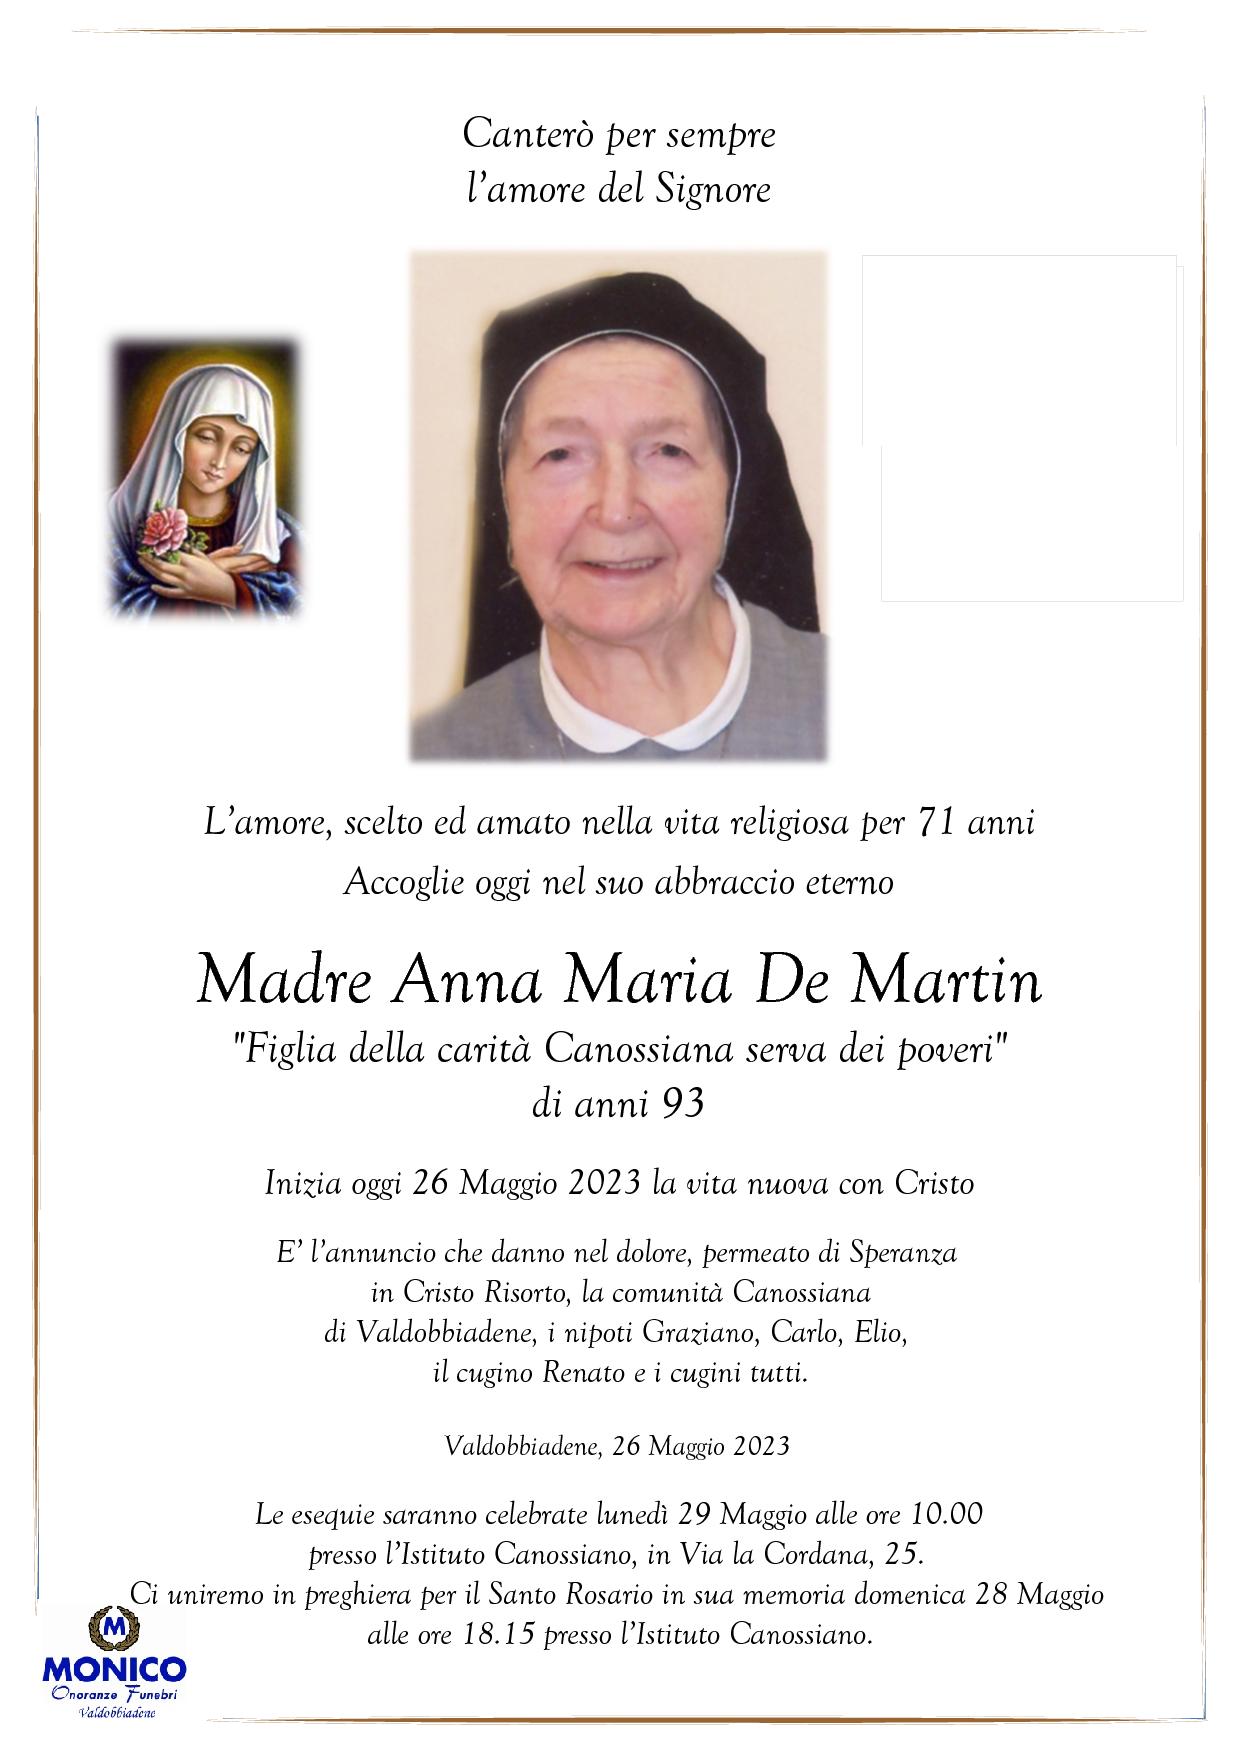 Canossiana Renier Anna Maria De Martin